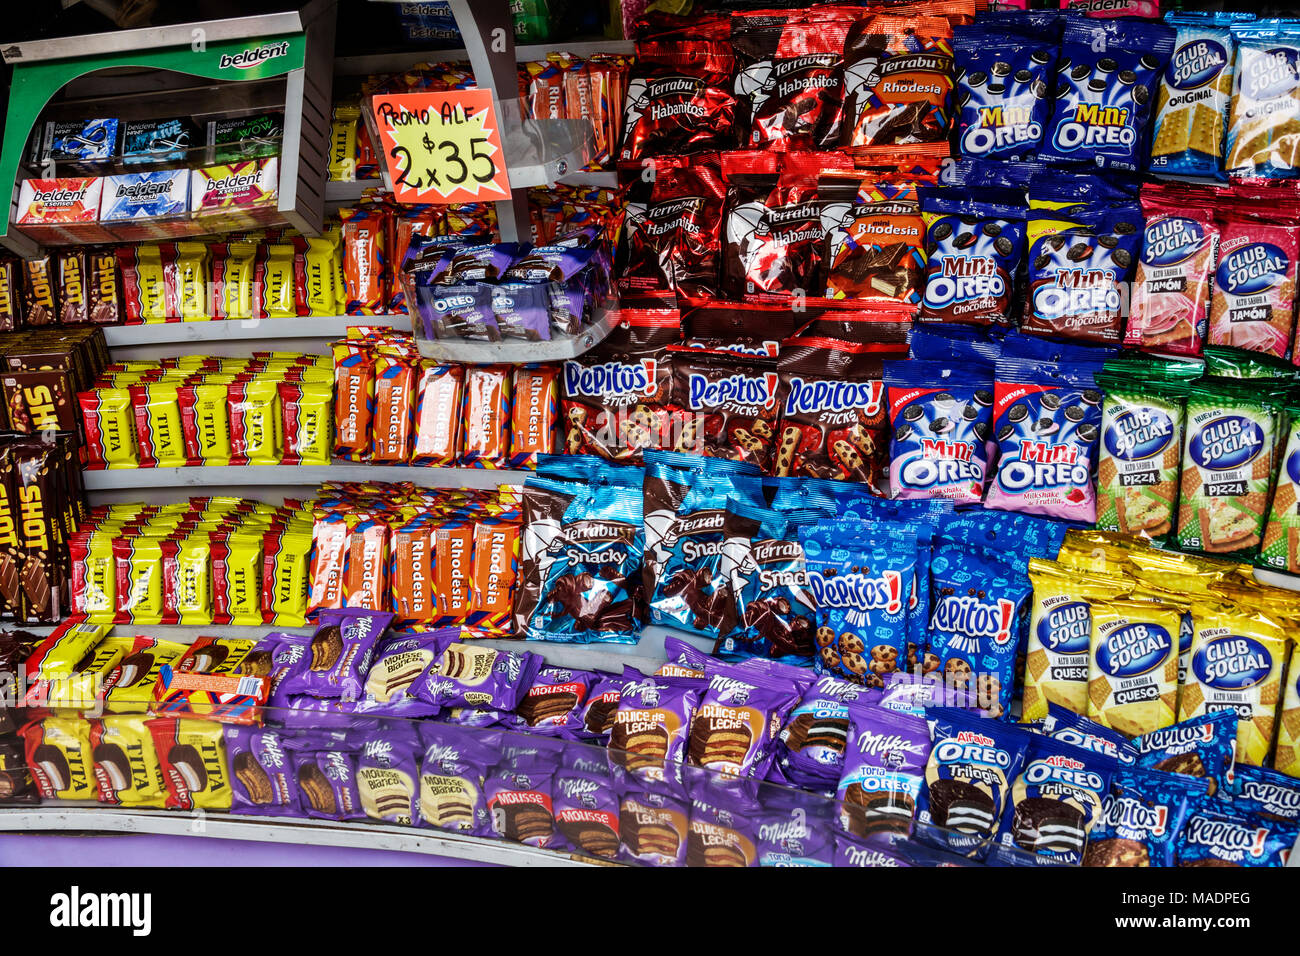 Buenos Aires Argentinien, El Jevi Kiosk, 24-Stunden-Geschäft, Regale mit Imbissladen, Süßigkeiten, Kekse, Display, Schokolade, Oreo, Hispanic, ARG171130310 Stockfoto